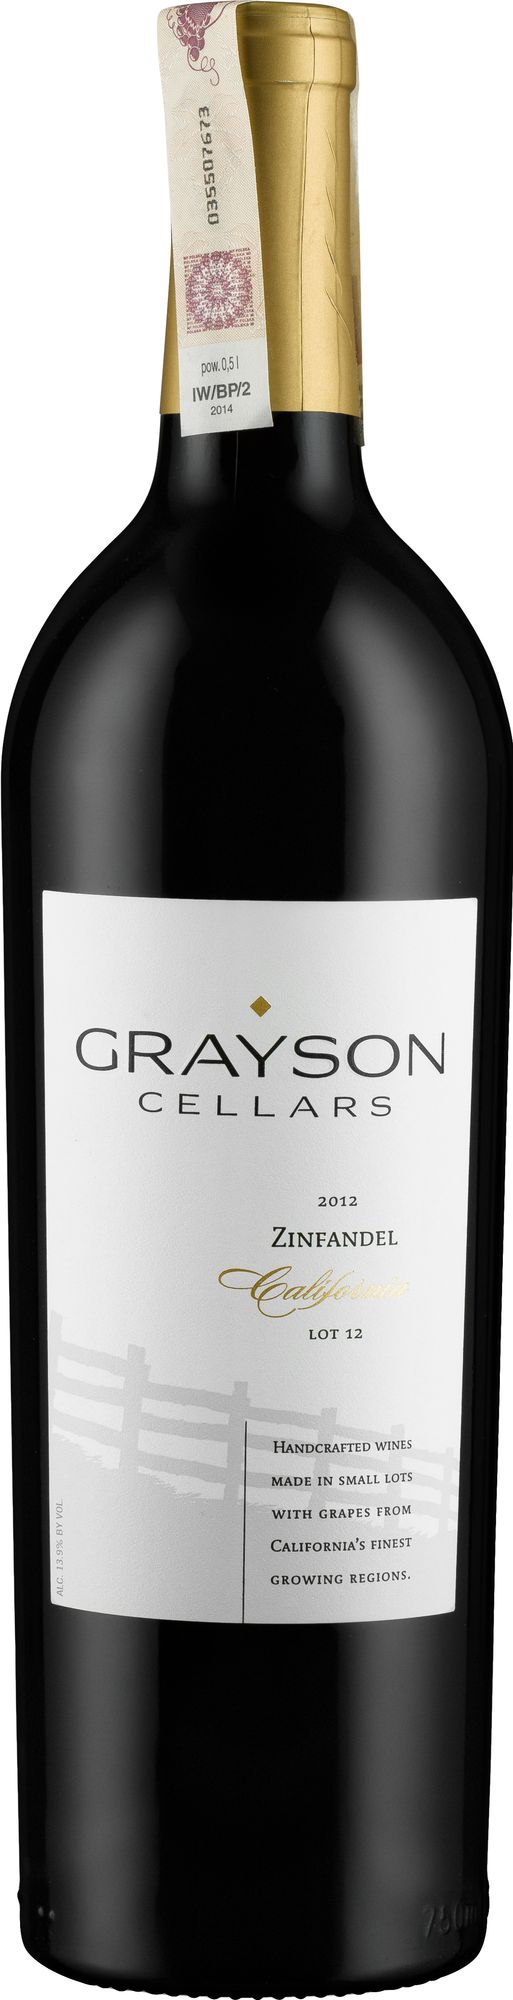 Wino Grayson Zinfandel California